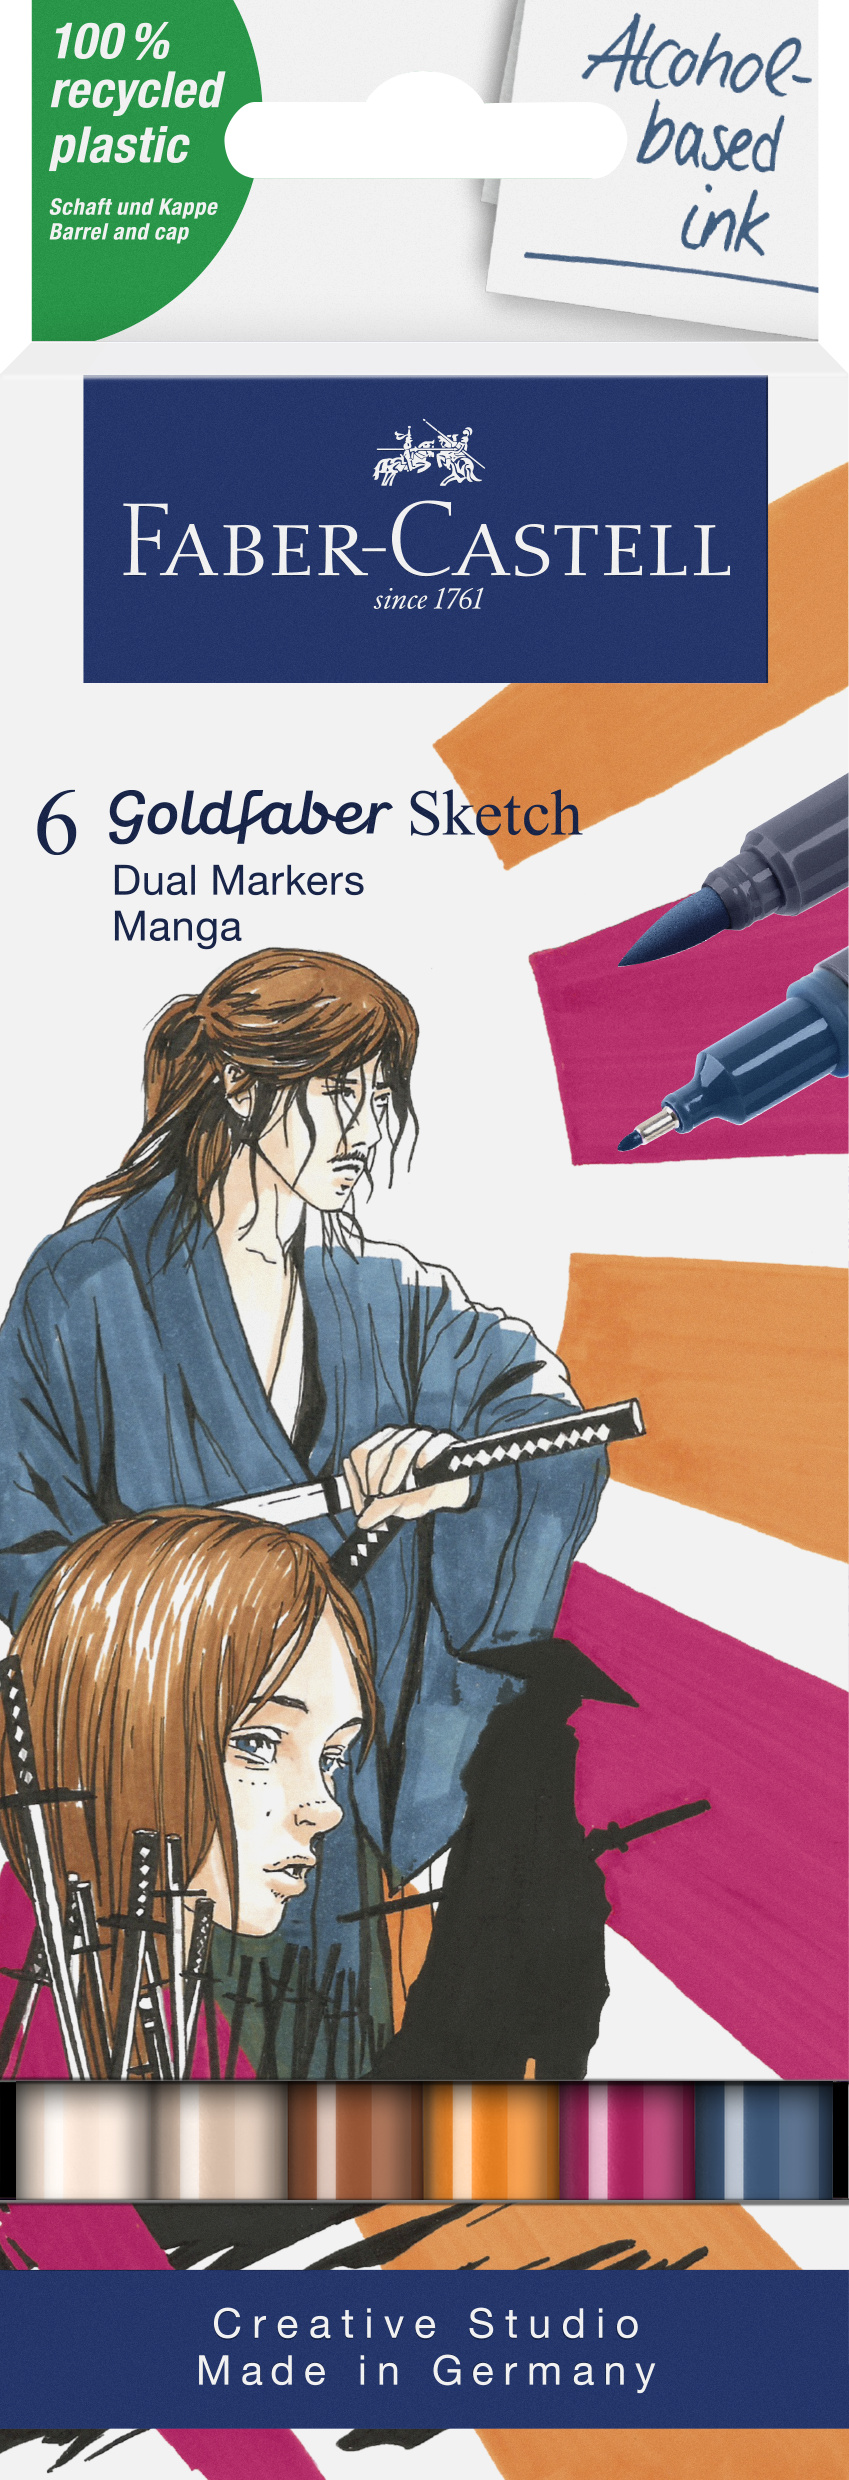 Faber-Castell_Goldfaber Sketch Marker, 6er set, Manga_EUR 18,00